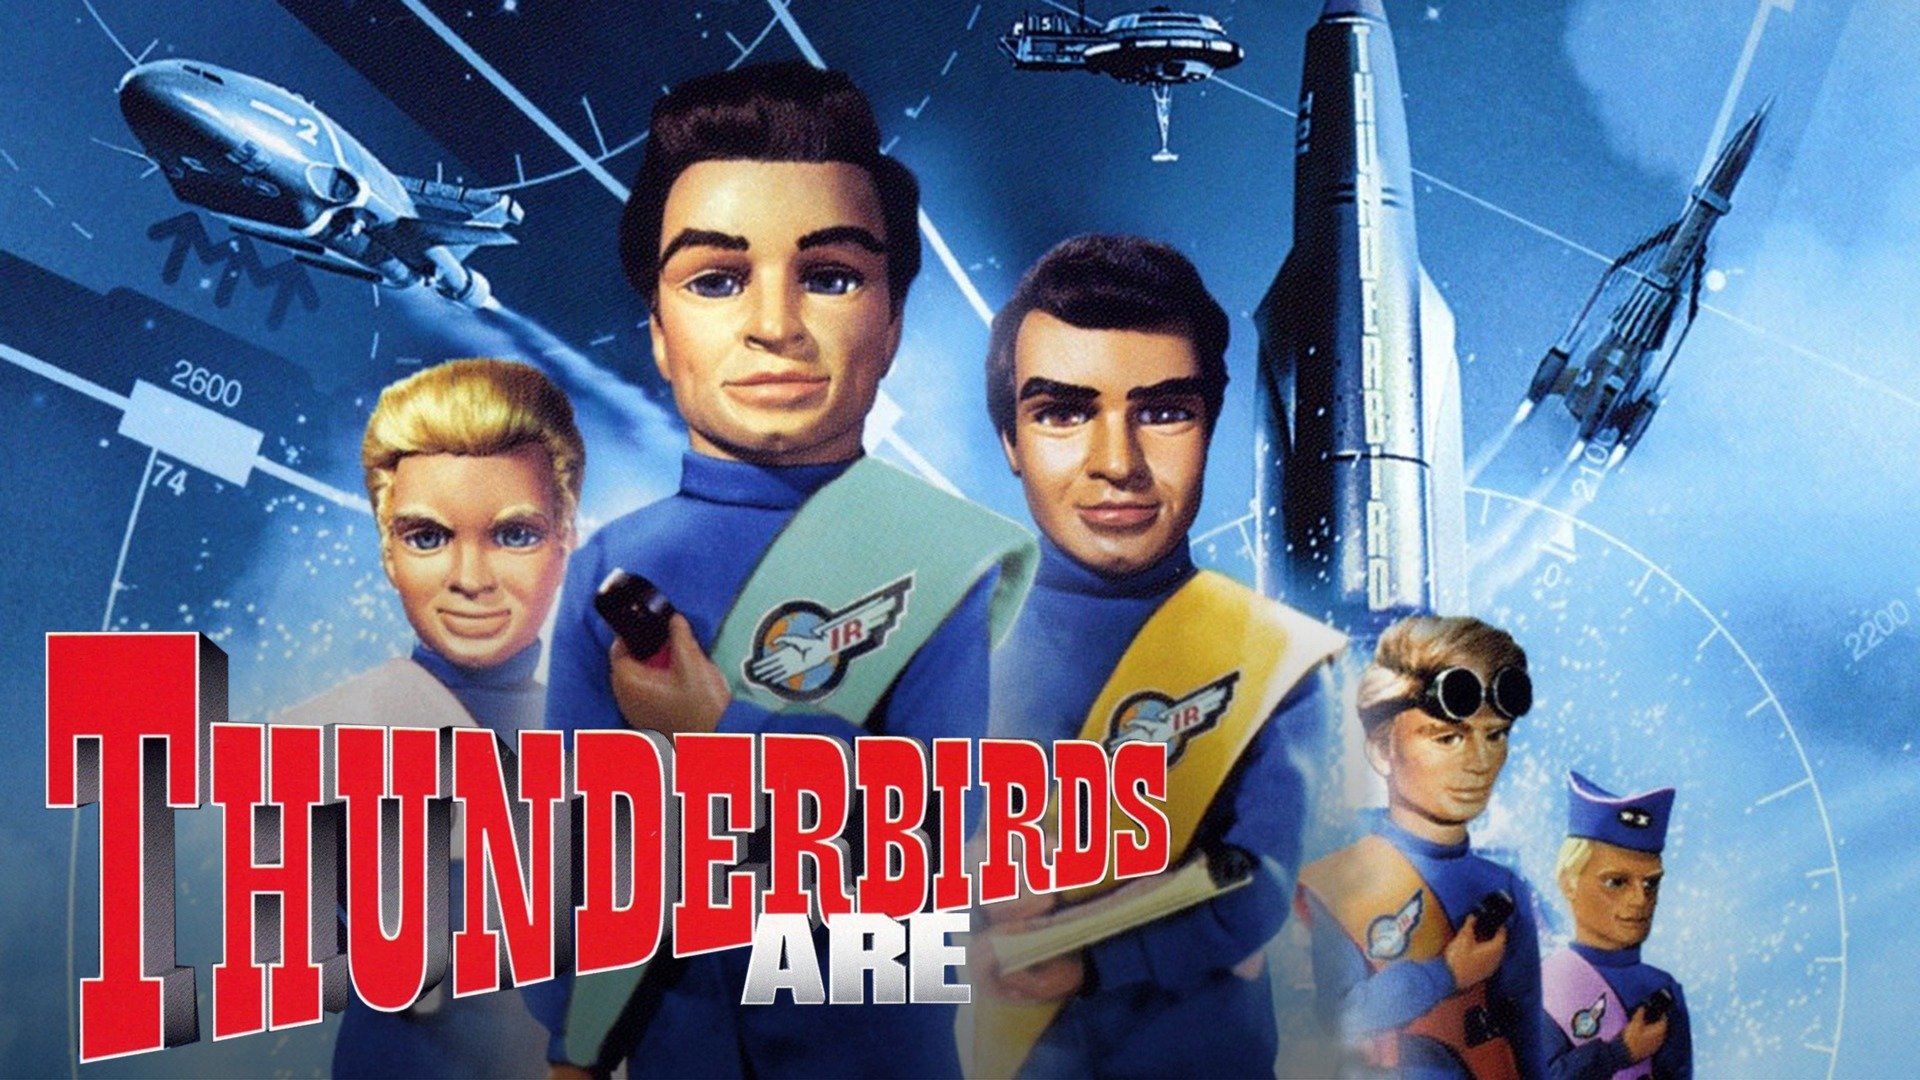 31 Thunderbirds 2086 ideas | thunderbird, thunderbirds are go, thunderbird 1